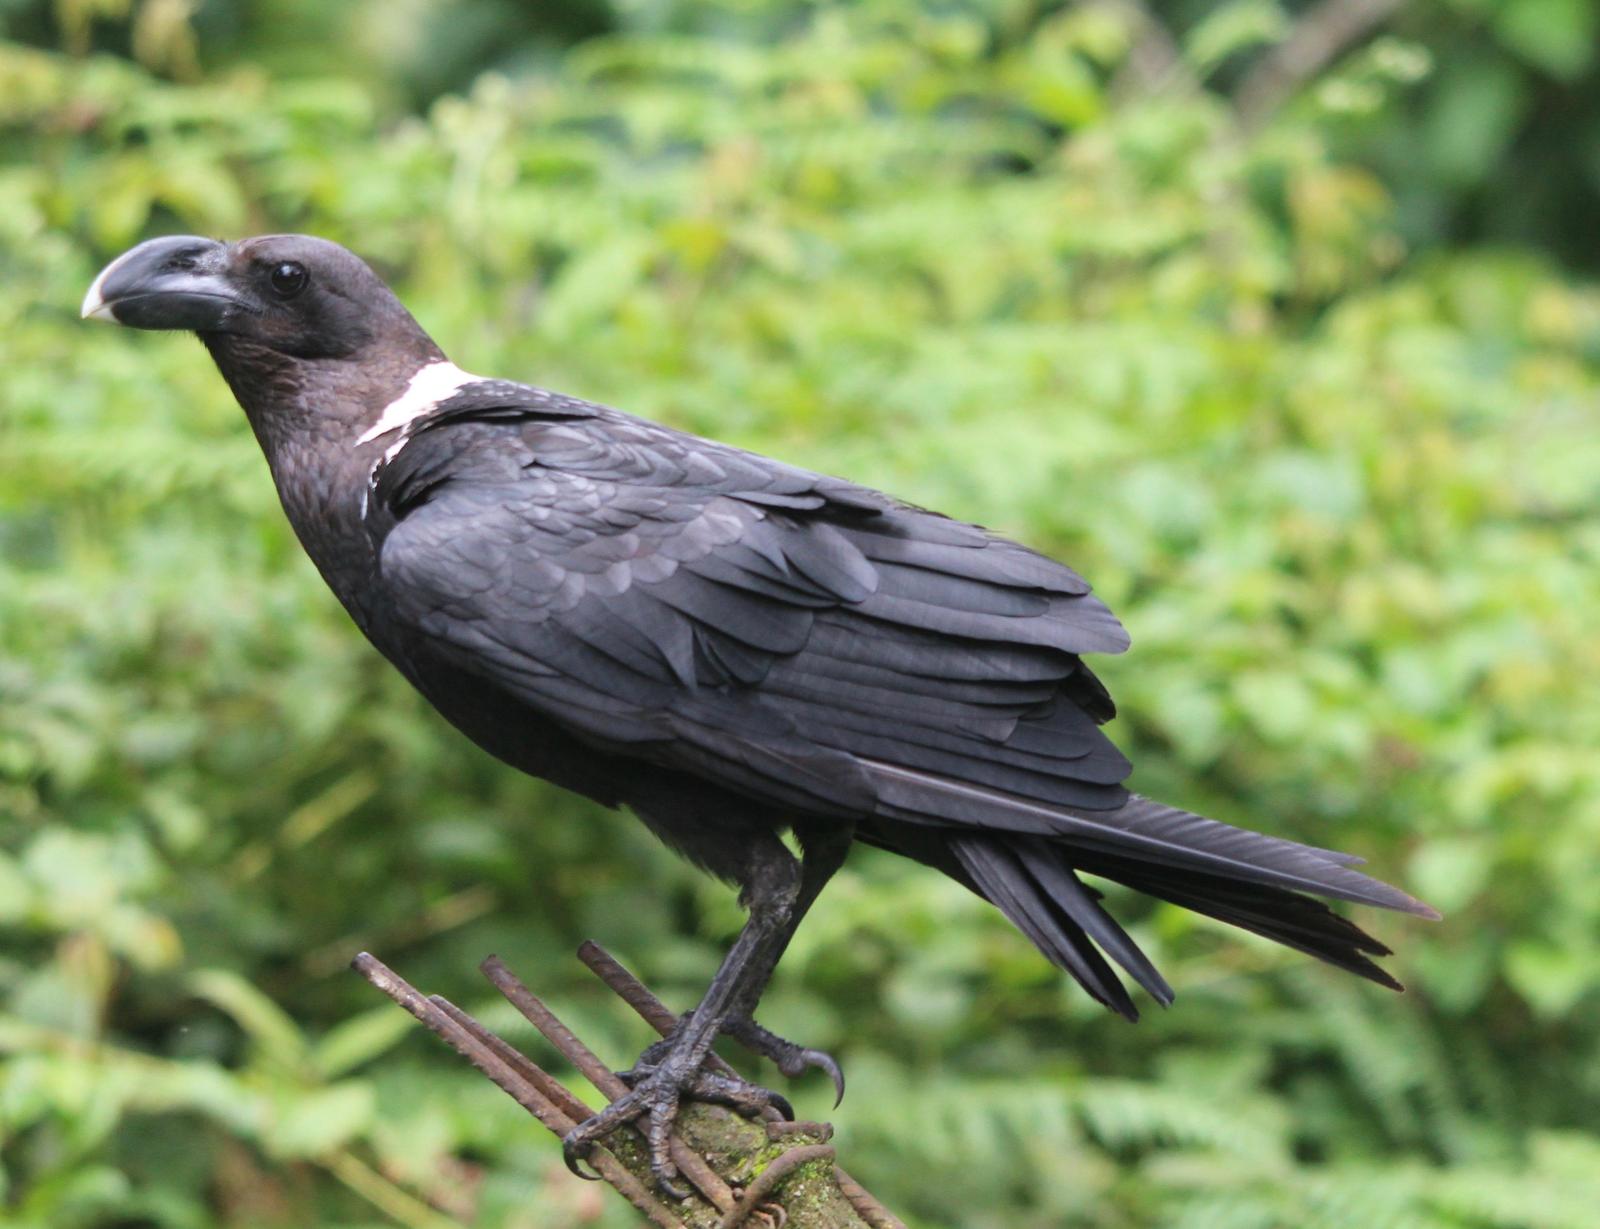 White-necked Raven Photo by Daniel Sloan